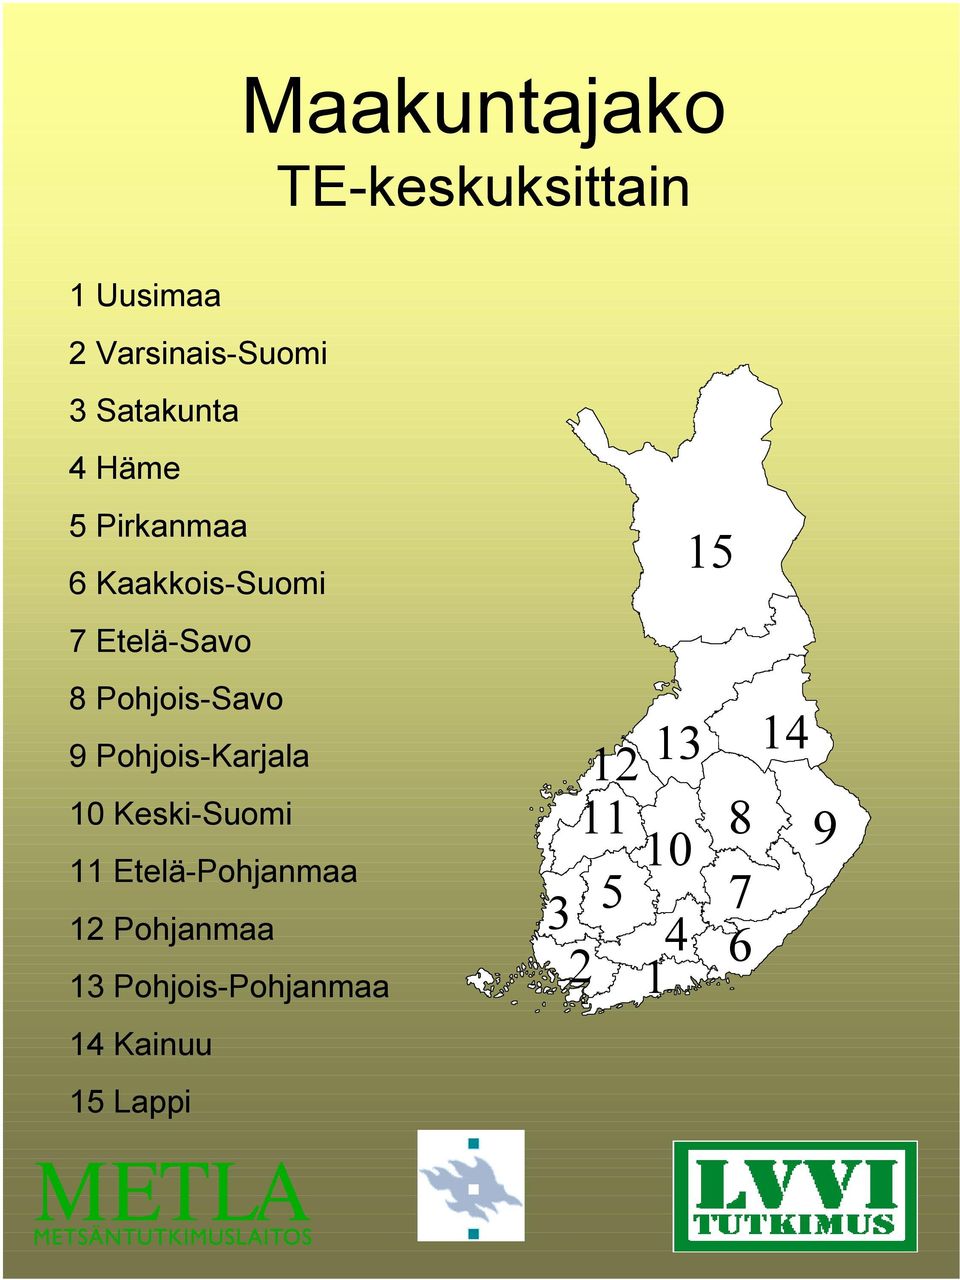 Pohjois-Savo 9 Pohjois-Karjala 10 Keski-Suomi 11 Etelä-Pohjanmaa 12